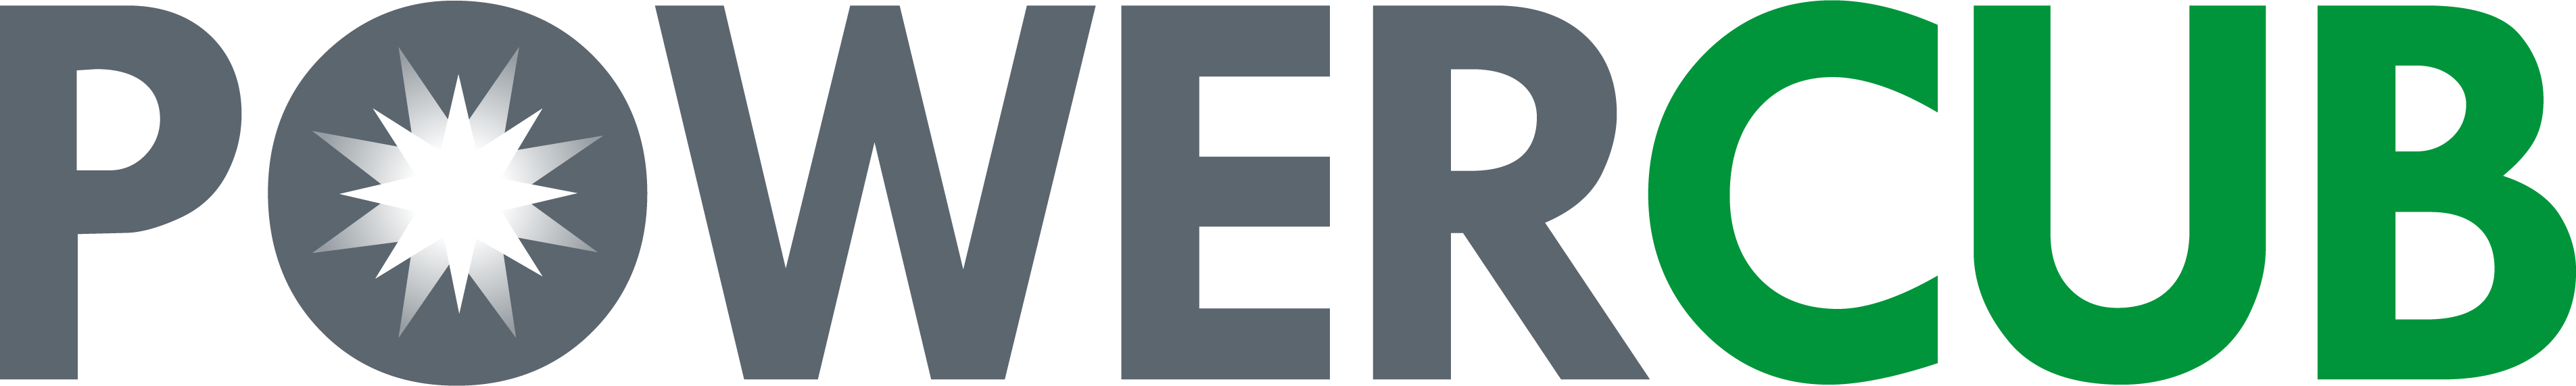 Power Cub Logo